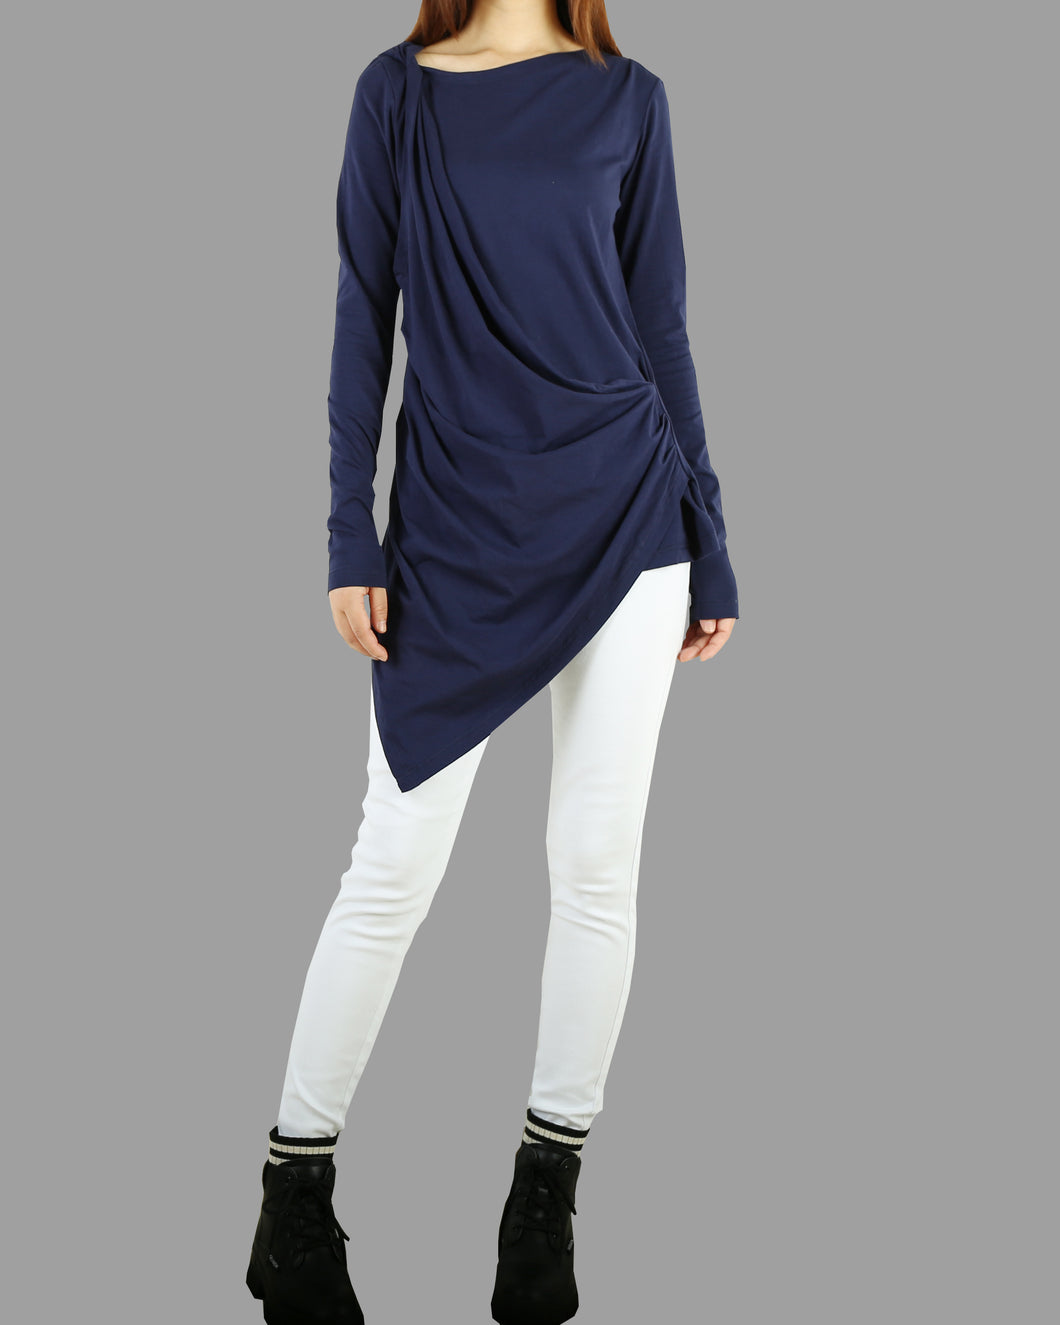 Women Asymmetrical Cotton Top/Long Sleeve Tunic Dress/cotton  t-shirt/Customized shirt/Tunic Top for Leggings(Y1704)